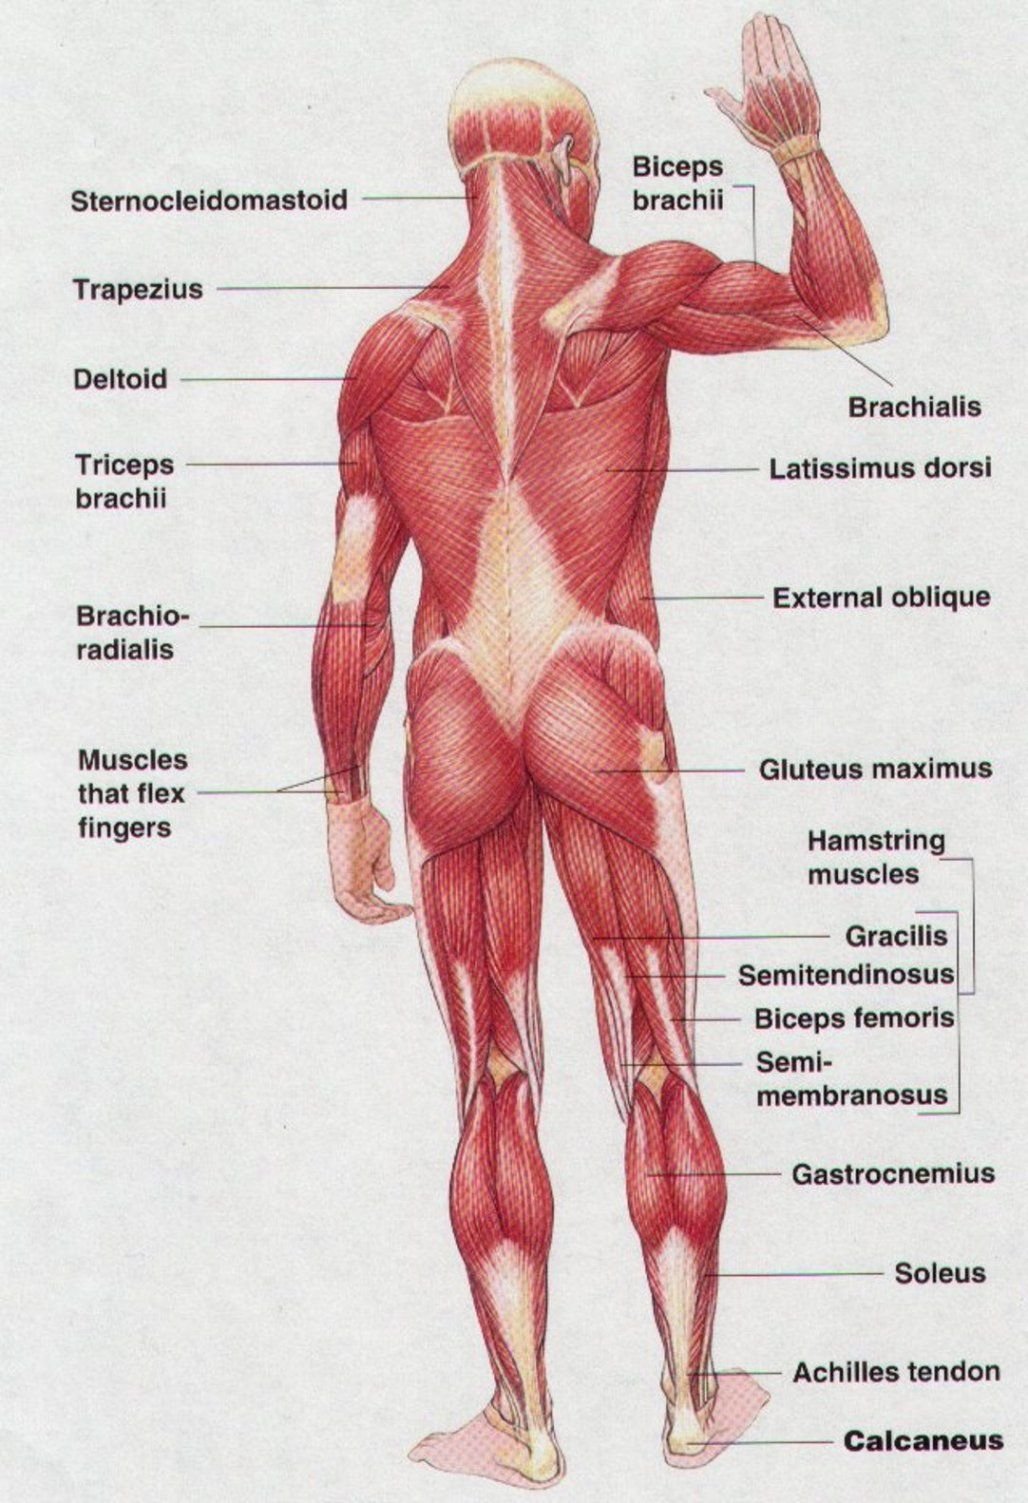 Мышцы картинка. Строение мышц человека вид сзади. Мышцы туловища анатомия вид сзади. Мышцы вид спереди и сзади с подписями. Скелетные мышцы человека вид сзади.